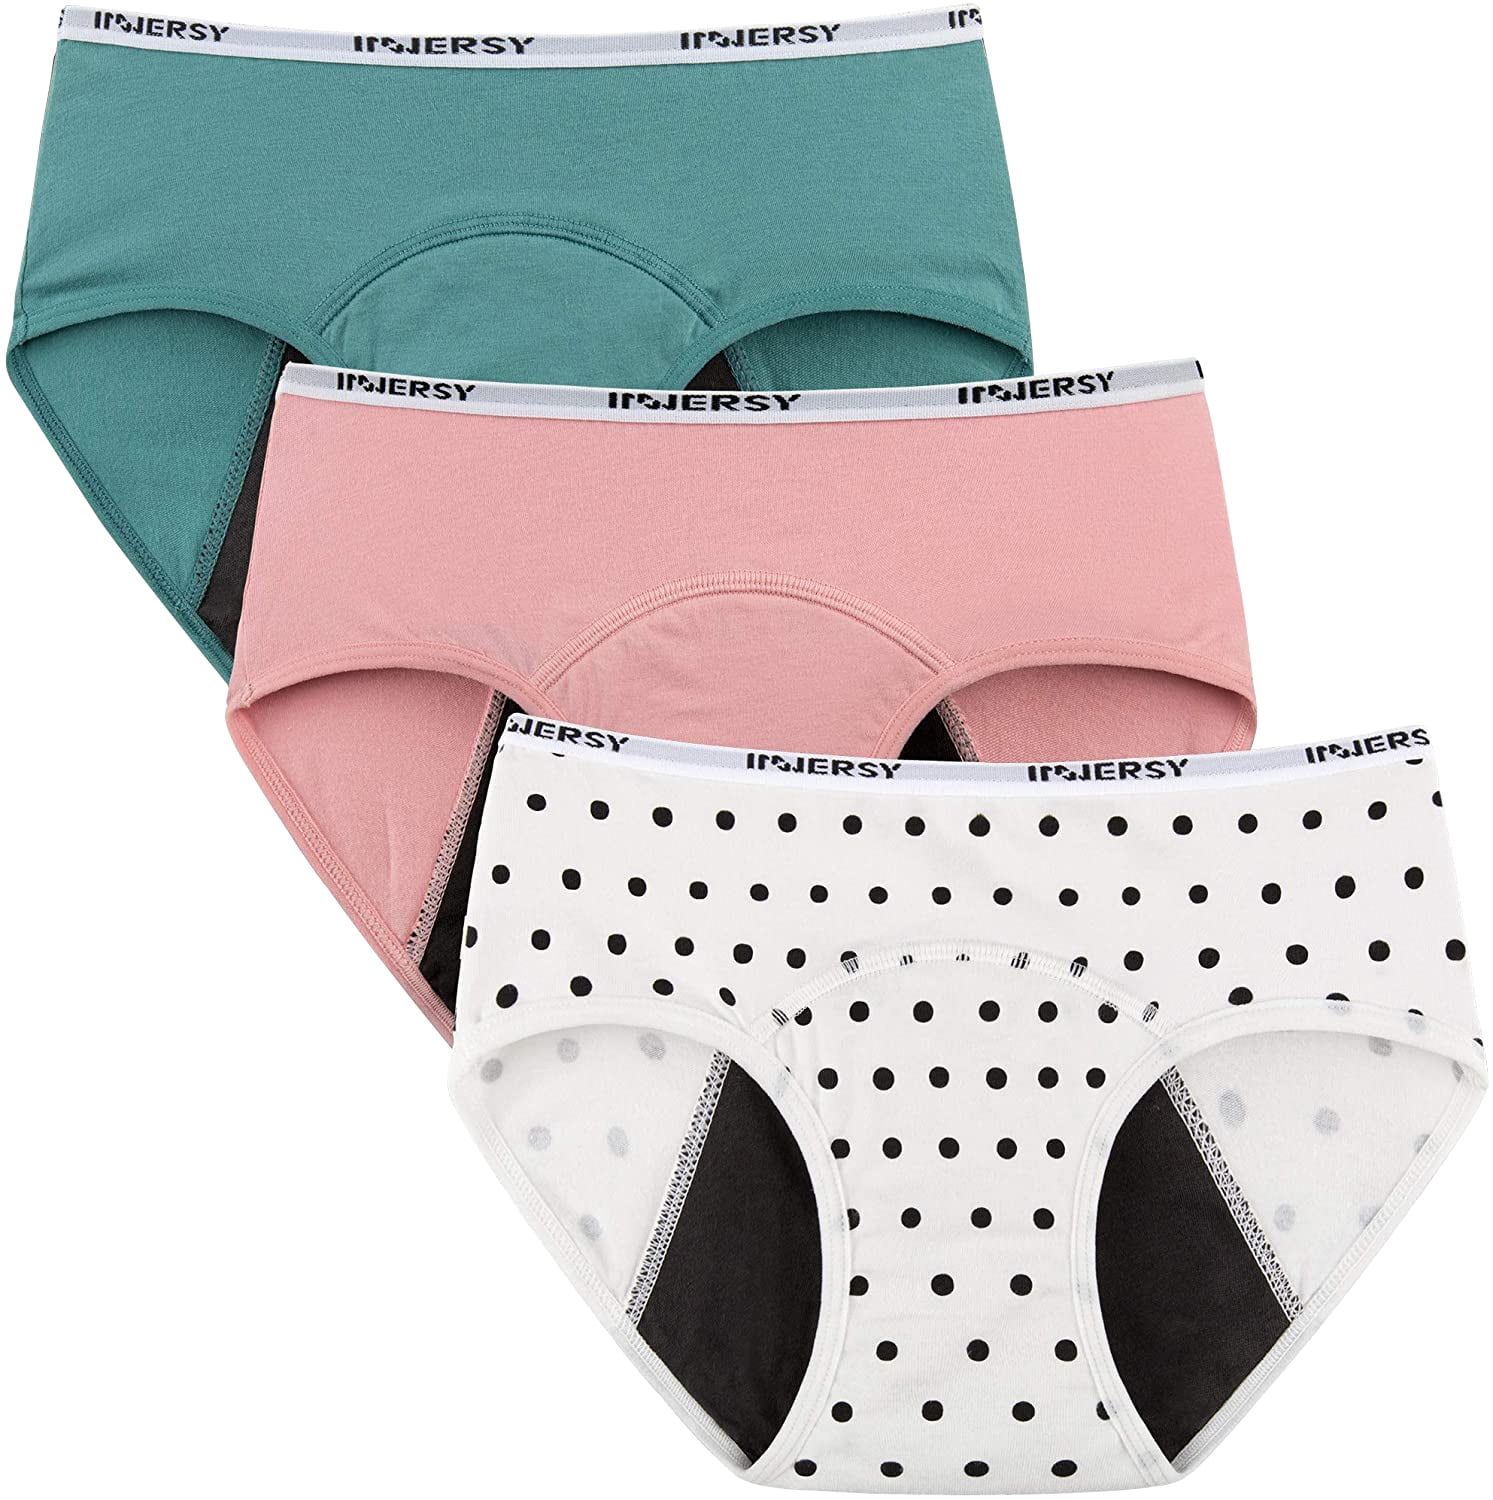 INNERSY Period Underwear for Teens Cotton Leekproof Menstrual Panties 3 ...